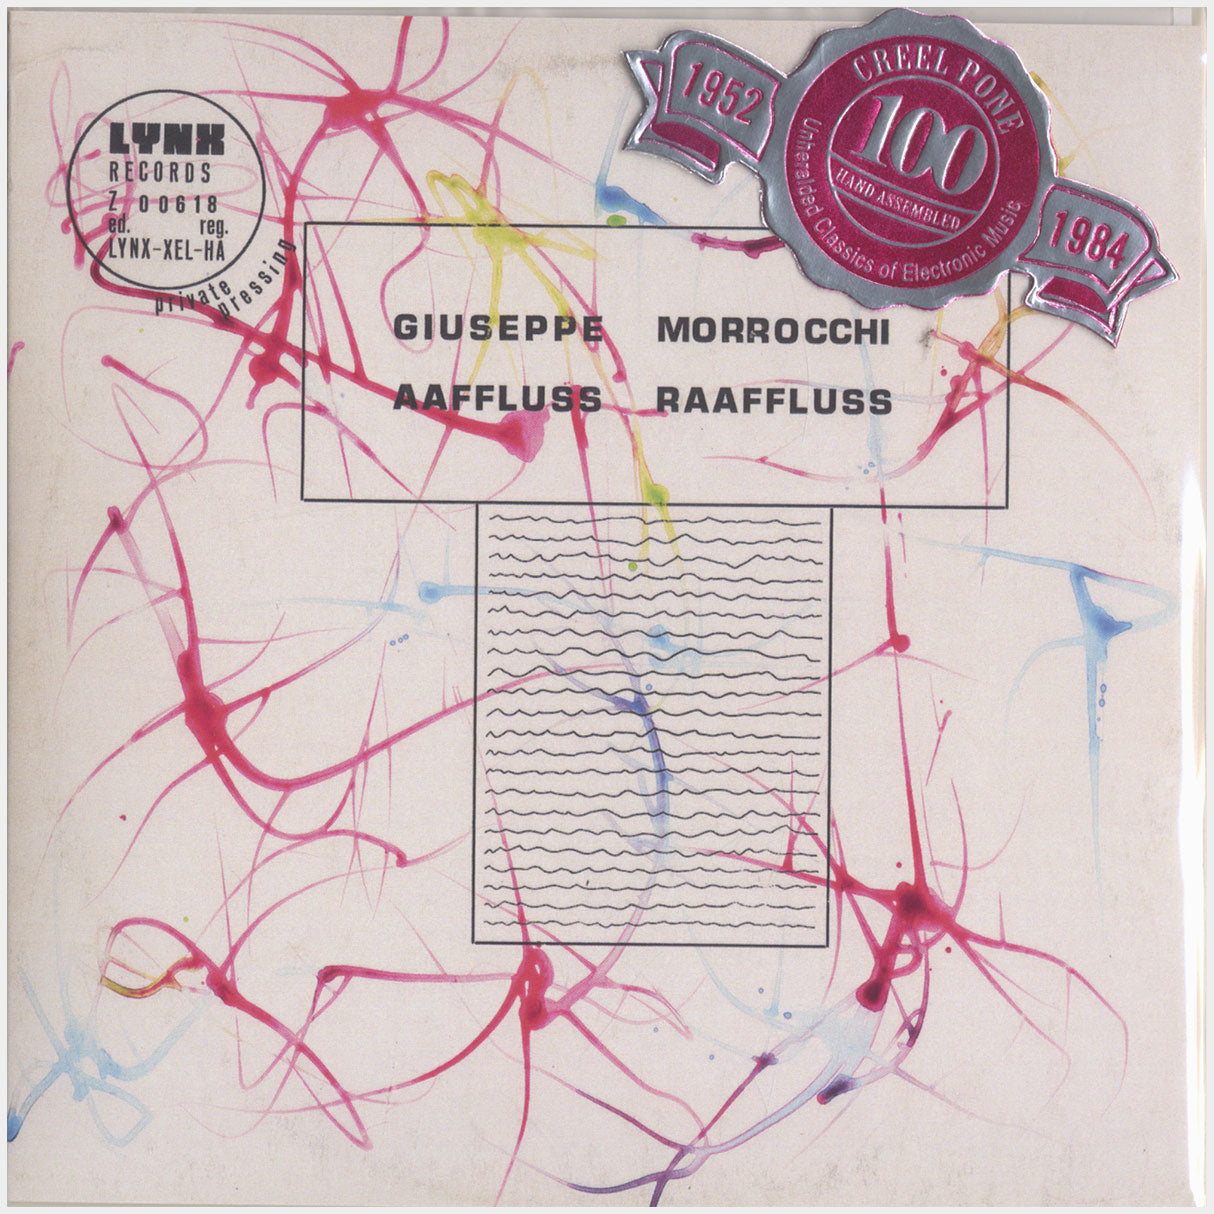 [CP 124 CD] Giuseppe Morrocchi; Aaffluss Raaffluss